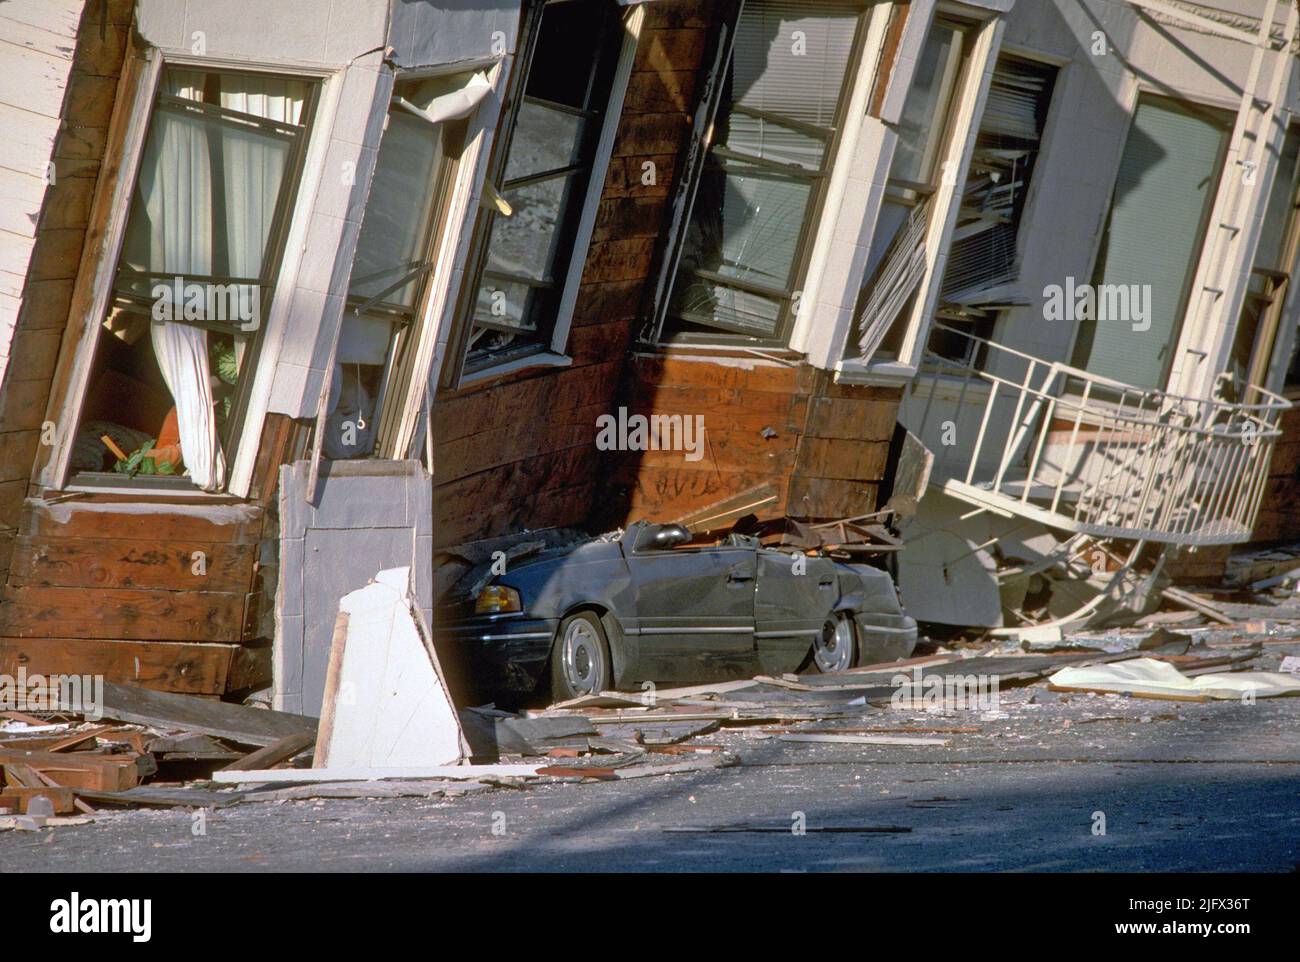 Il 17 ottobre 1989, alle 5:04pm (PDT), un terremoto di magnitudo 6,9 ha scosso gravemente le regioni di San Francisco e Monterey Bay della California, USA. Qui, una macchina schiacciata sotto il terzo piano di questo edificio di appartamenti nel quartiere Marina. L'epicentro si trovava vicino alla cima di Loma Prieta, nei monti Santa Cruz. Il lavoro del Geological Survey degli Stati Uniti e di altre organizzazioni ha migliorato la comprensione della minaccia sismica nella regione di Bay, ha promosso la consapevolezza dei pericoli di terremoto e ha contribuito a strategie più efficaci per ridurre le perdite di terremoto.accreditamento: J. K. Nakata/USGS Foto Stock